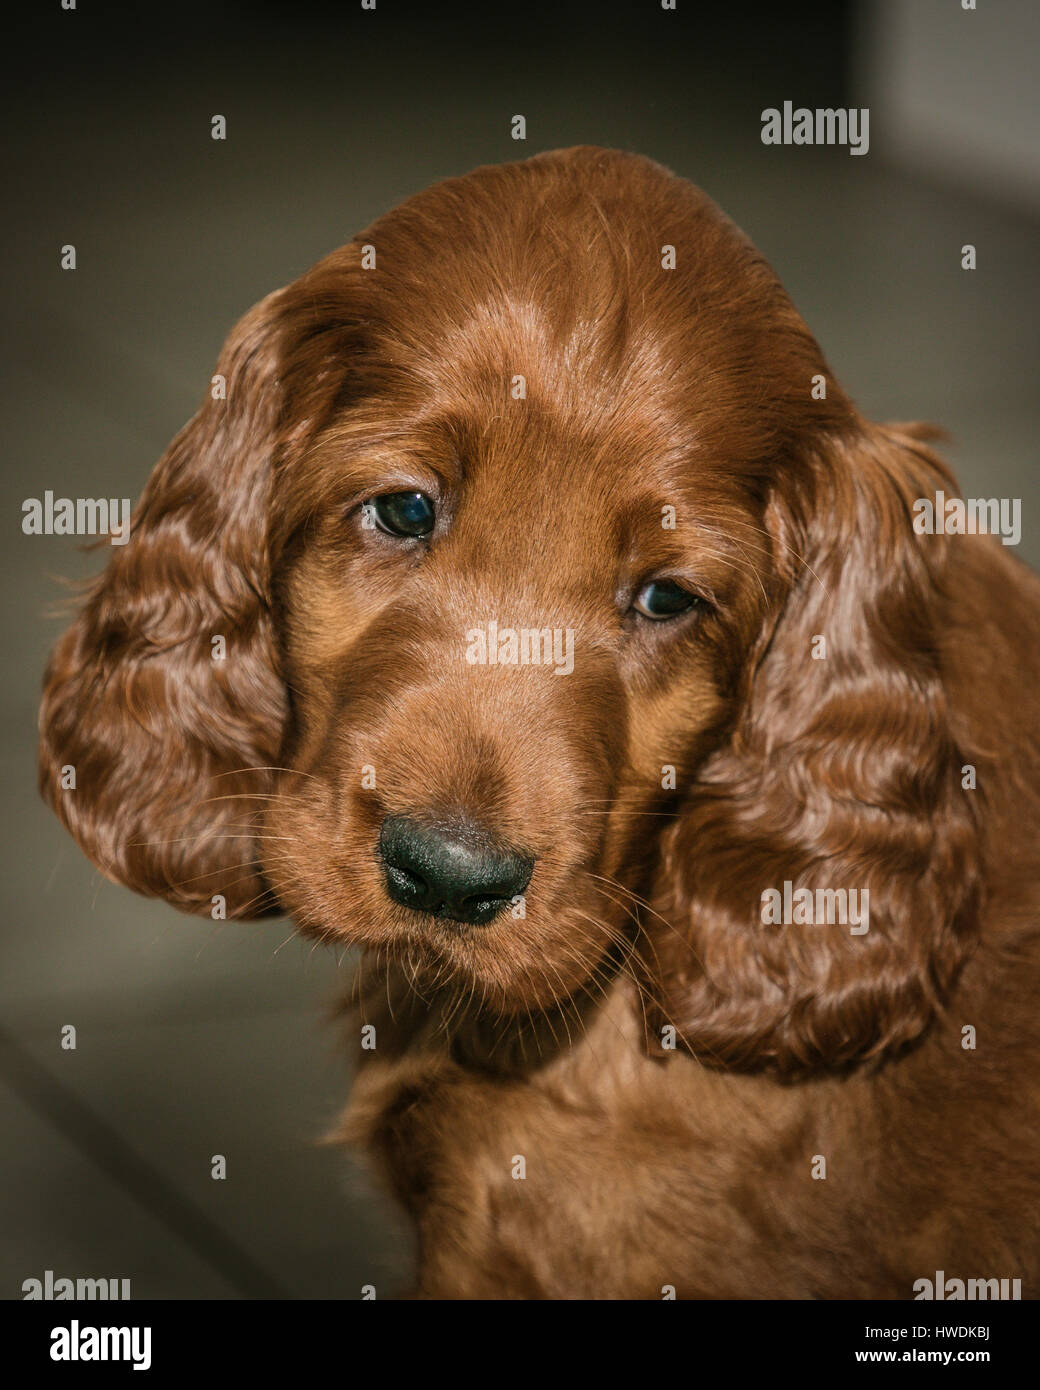 Six week old Irish Setter puppy Stock Photo